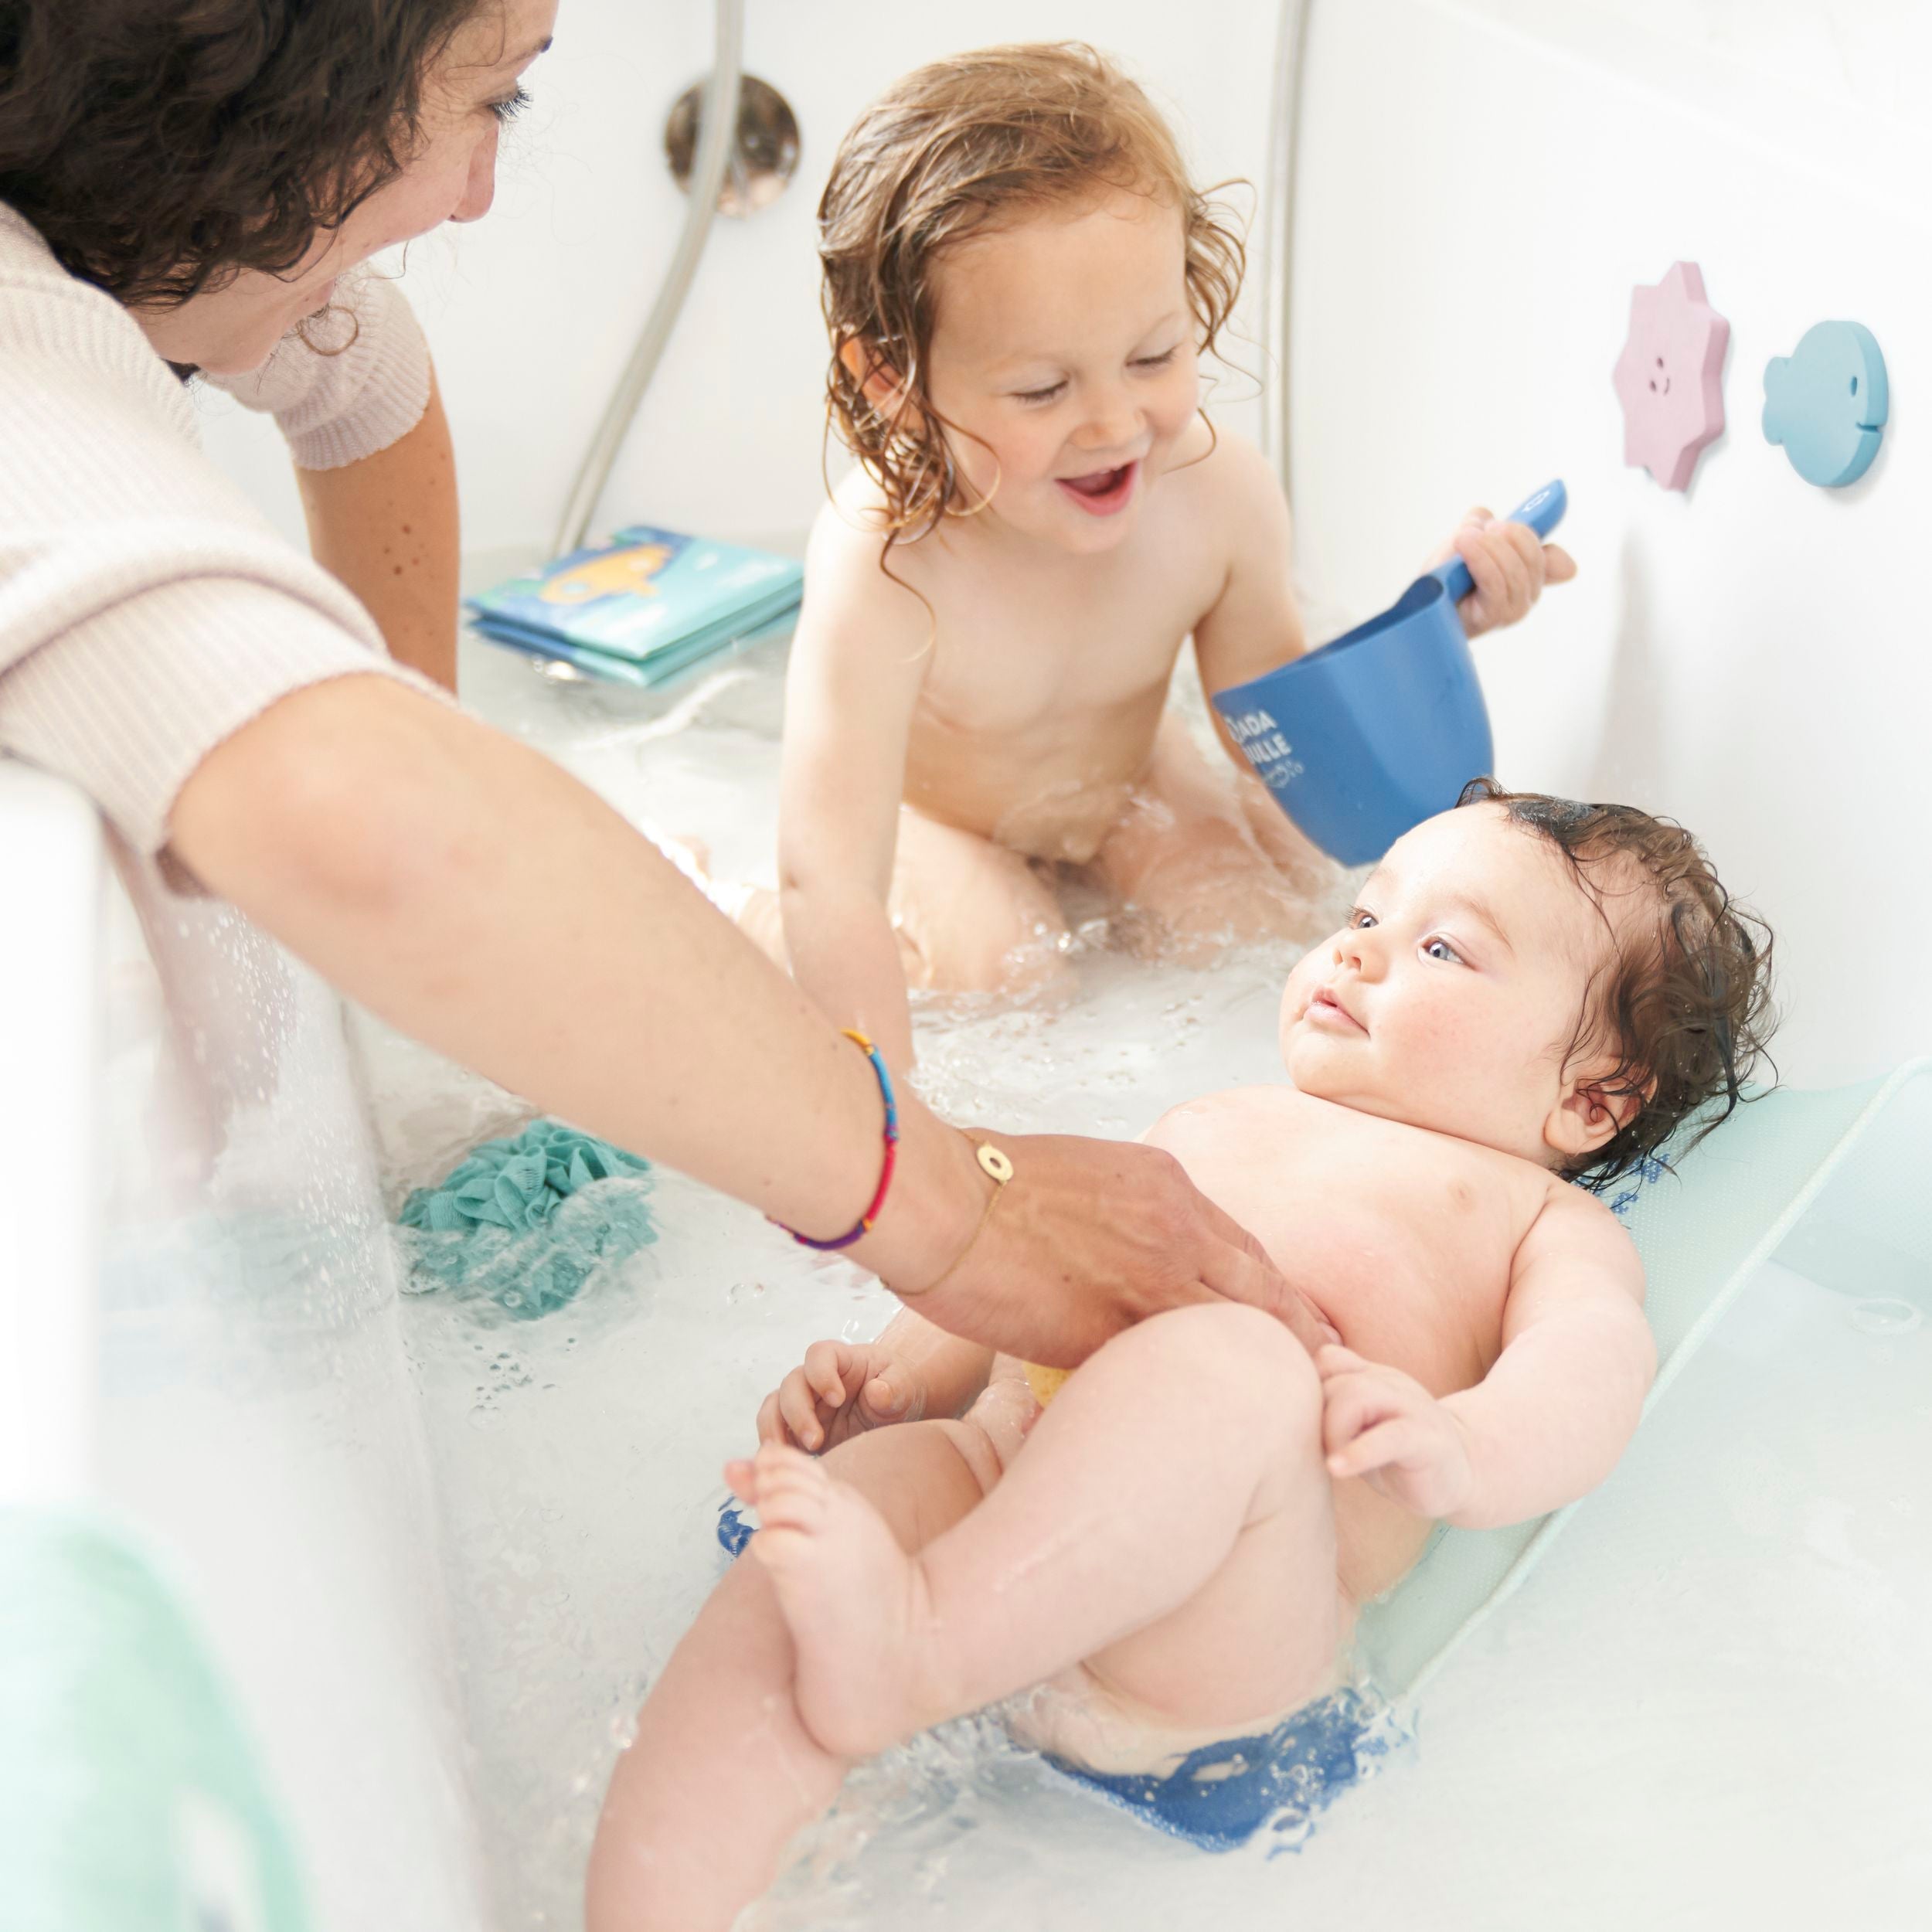 Hamac transat bain pour nourrisson et bébé. Modèles en plastique rigide